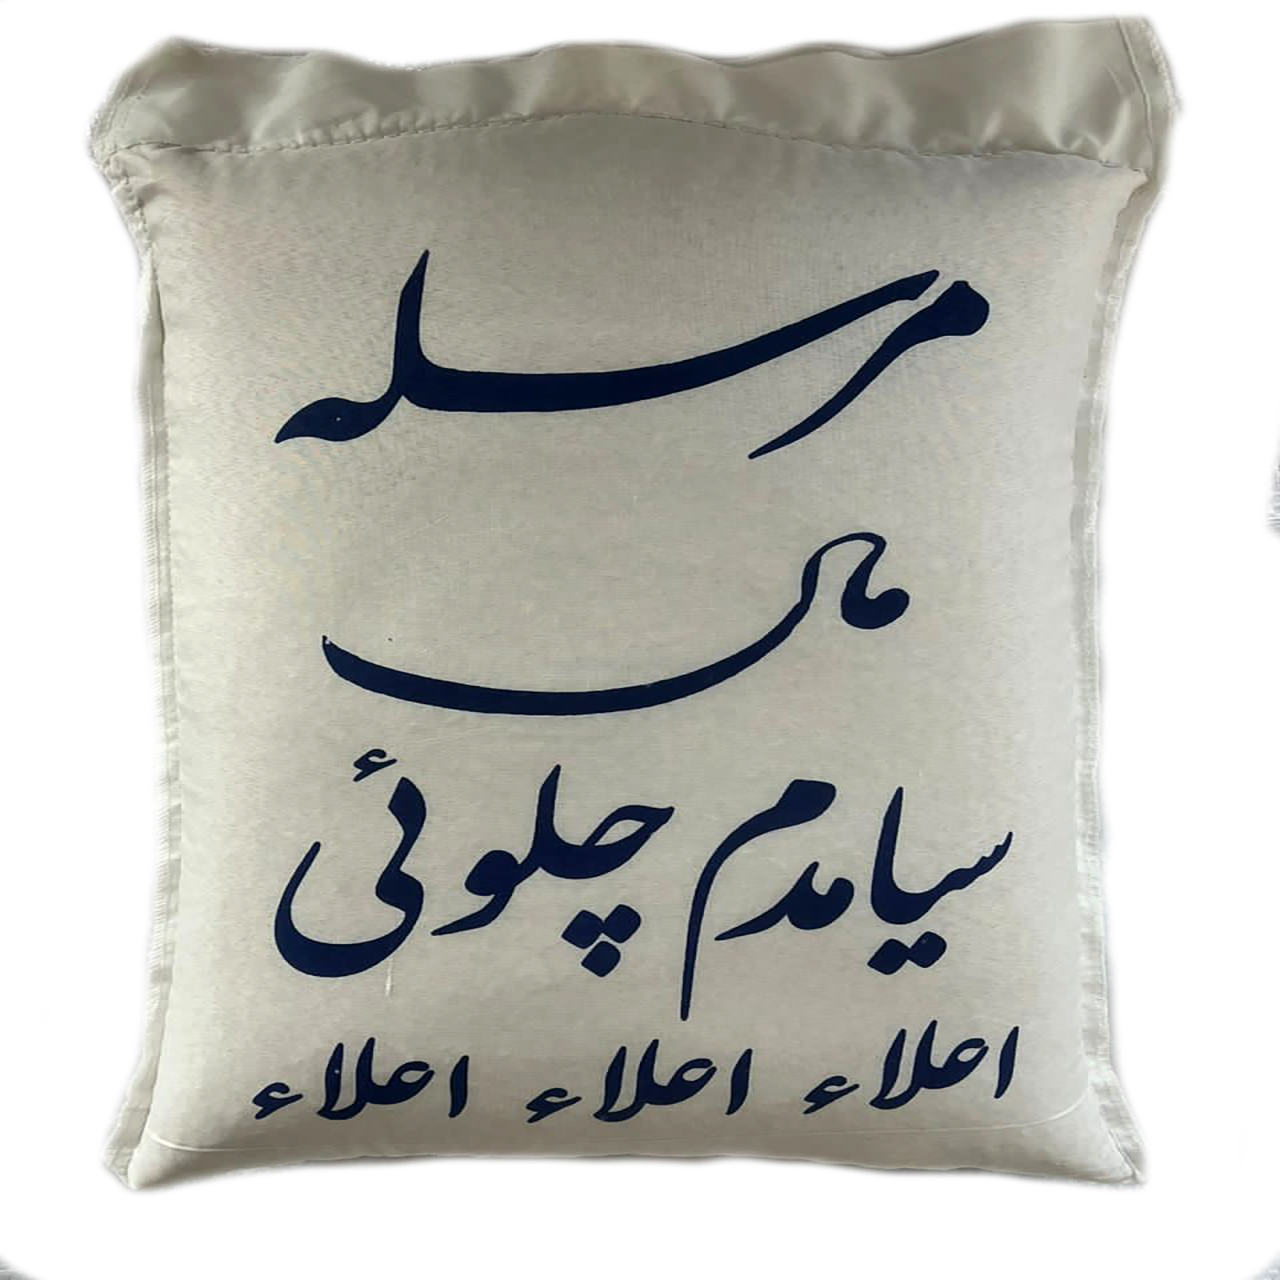 نکته خرید - قیمت روز برنج ایرانی مرسله سیاهدم چلوئی - 10 کیلوگرم خرید